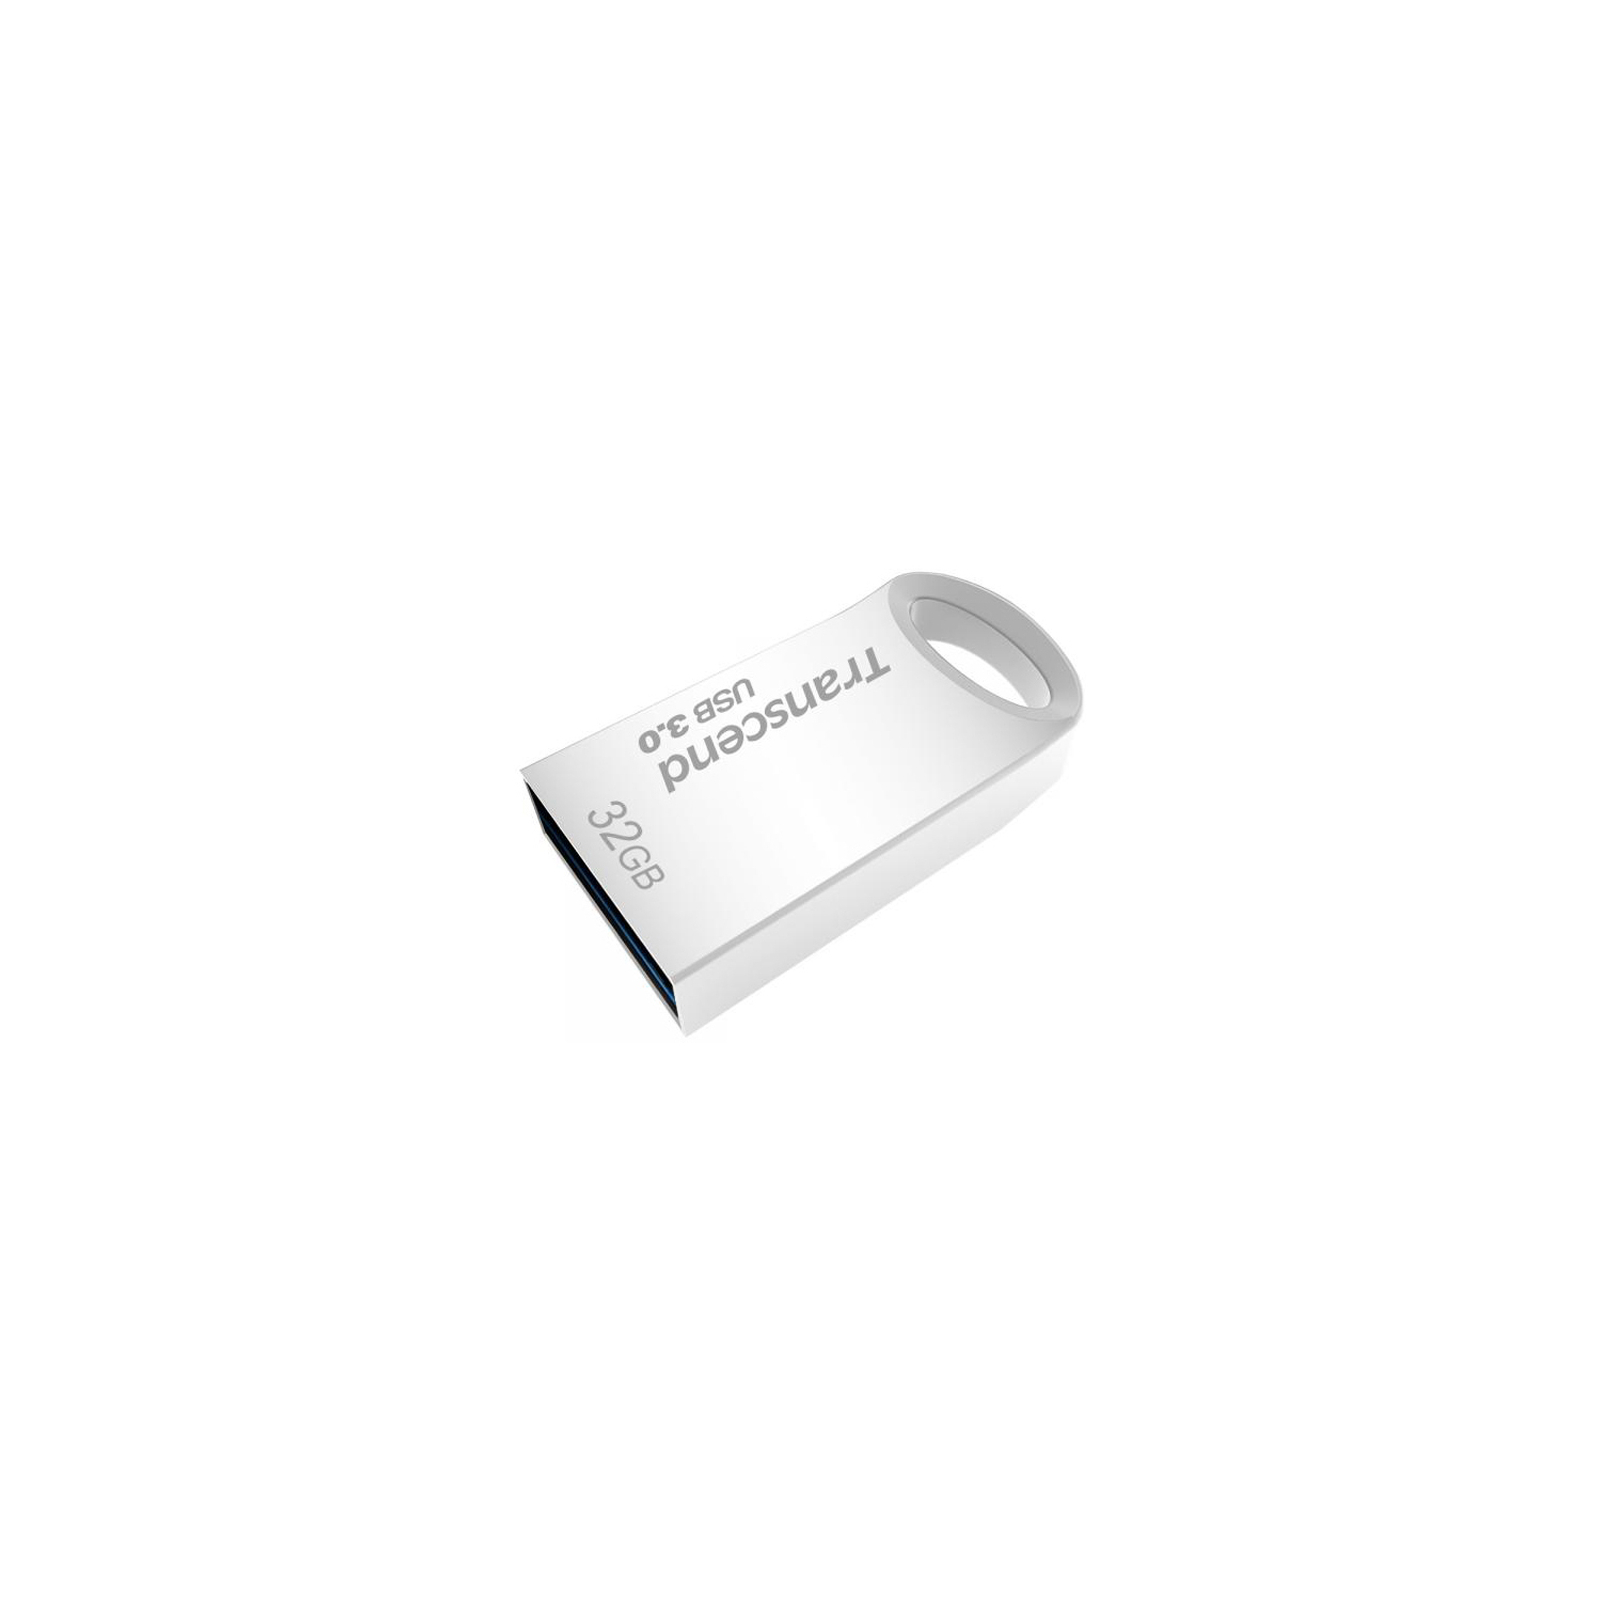 USB флеш накопитель Transcend 128GB JetFlash 710 Silver USB 3.0 (TS128GJF710S) изображение 3